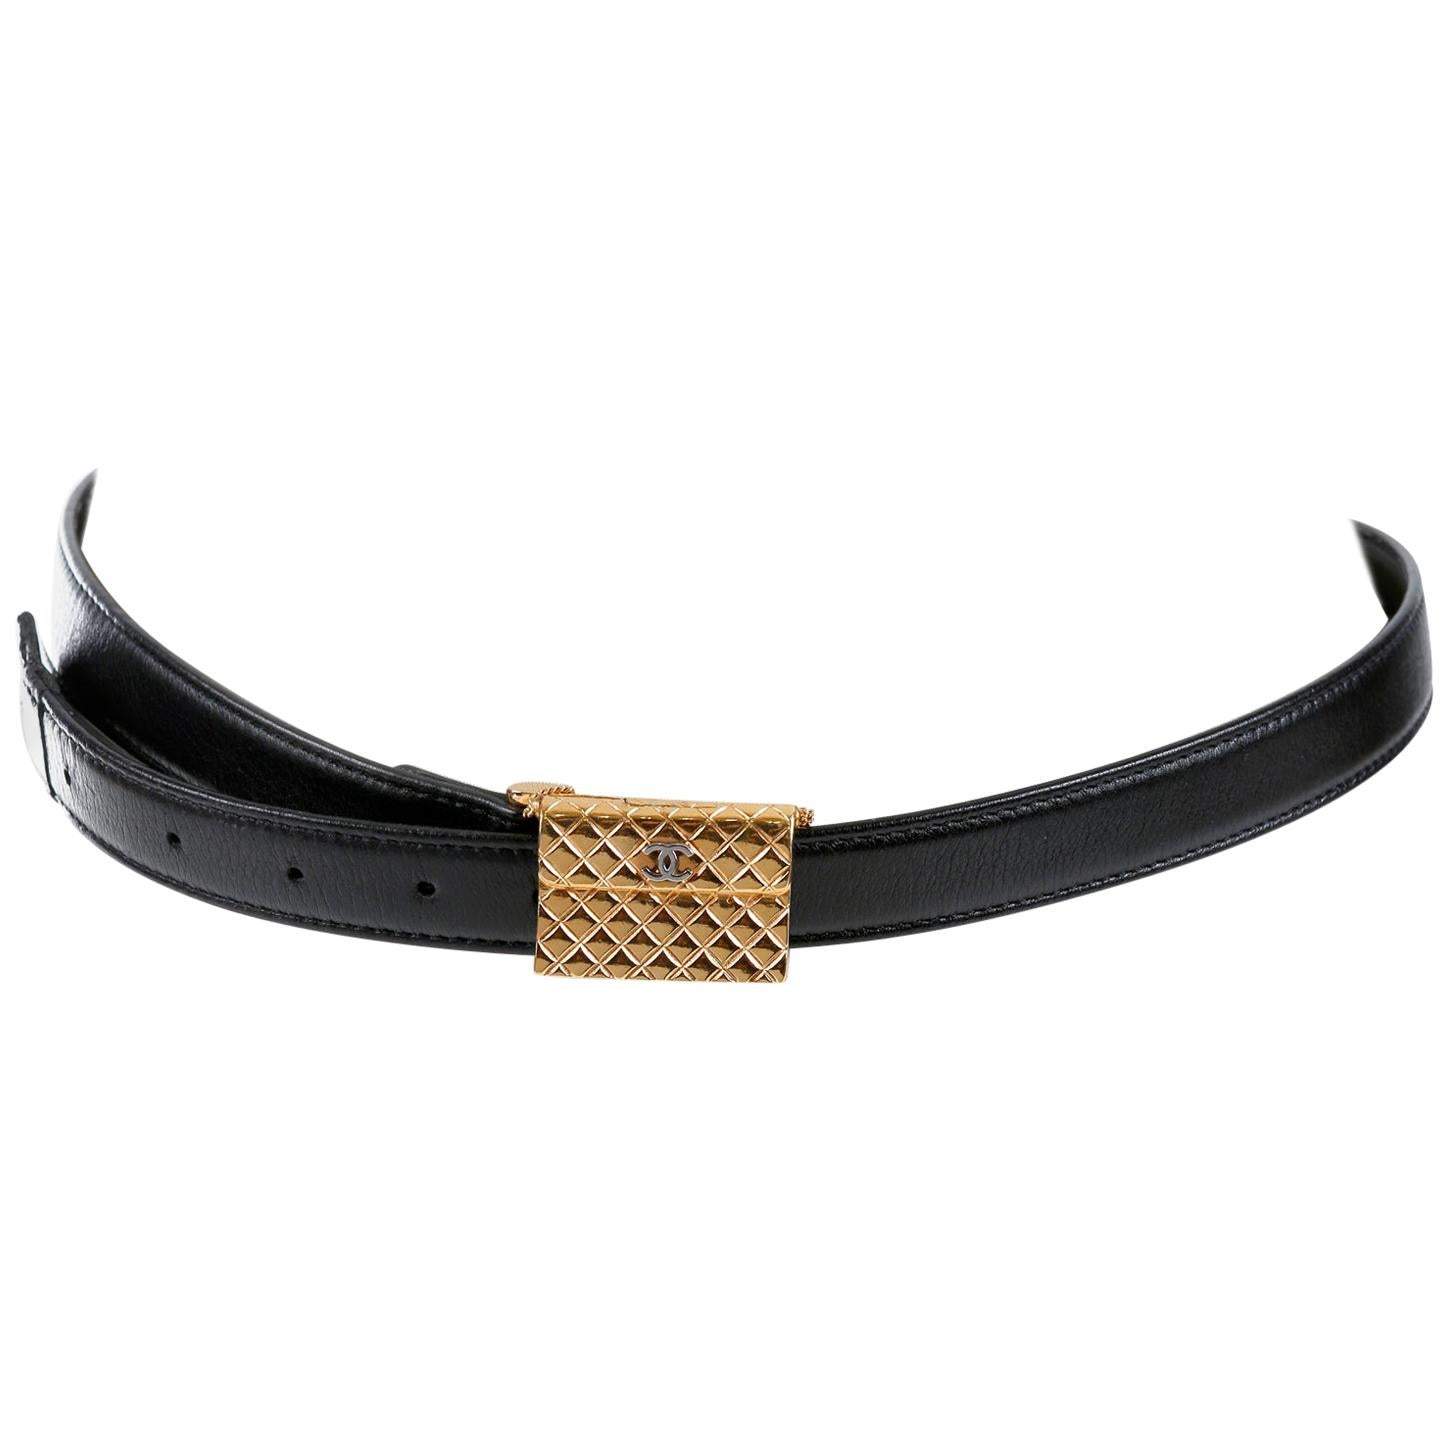 Chanel Black Leather Quilted Handbag Buckle Belt 75/30